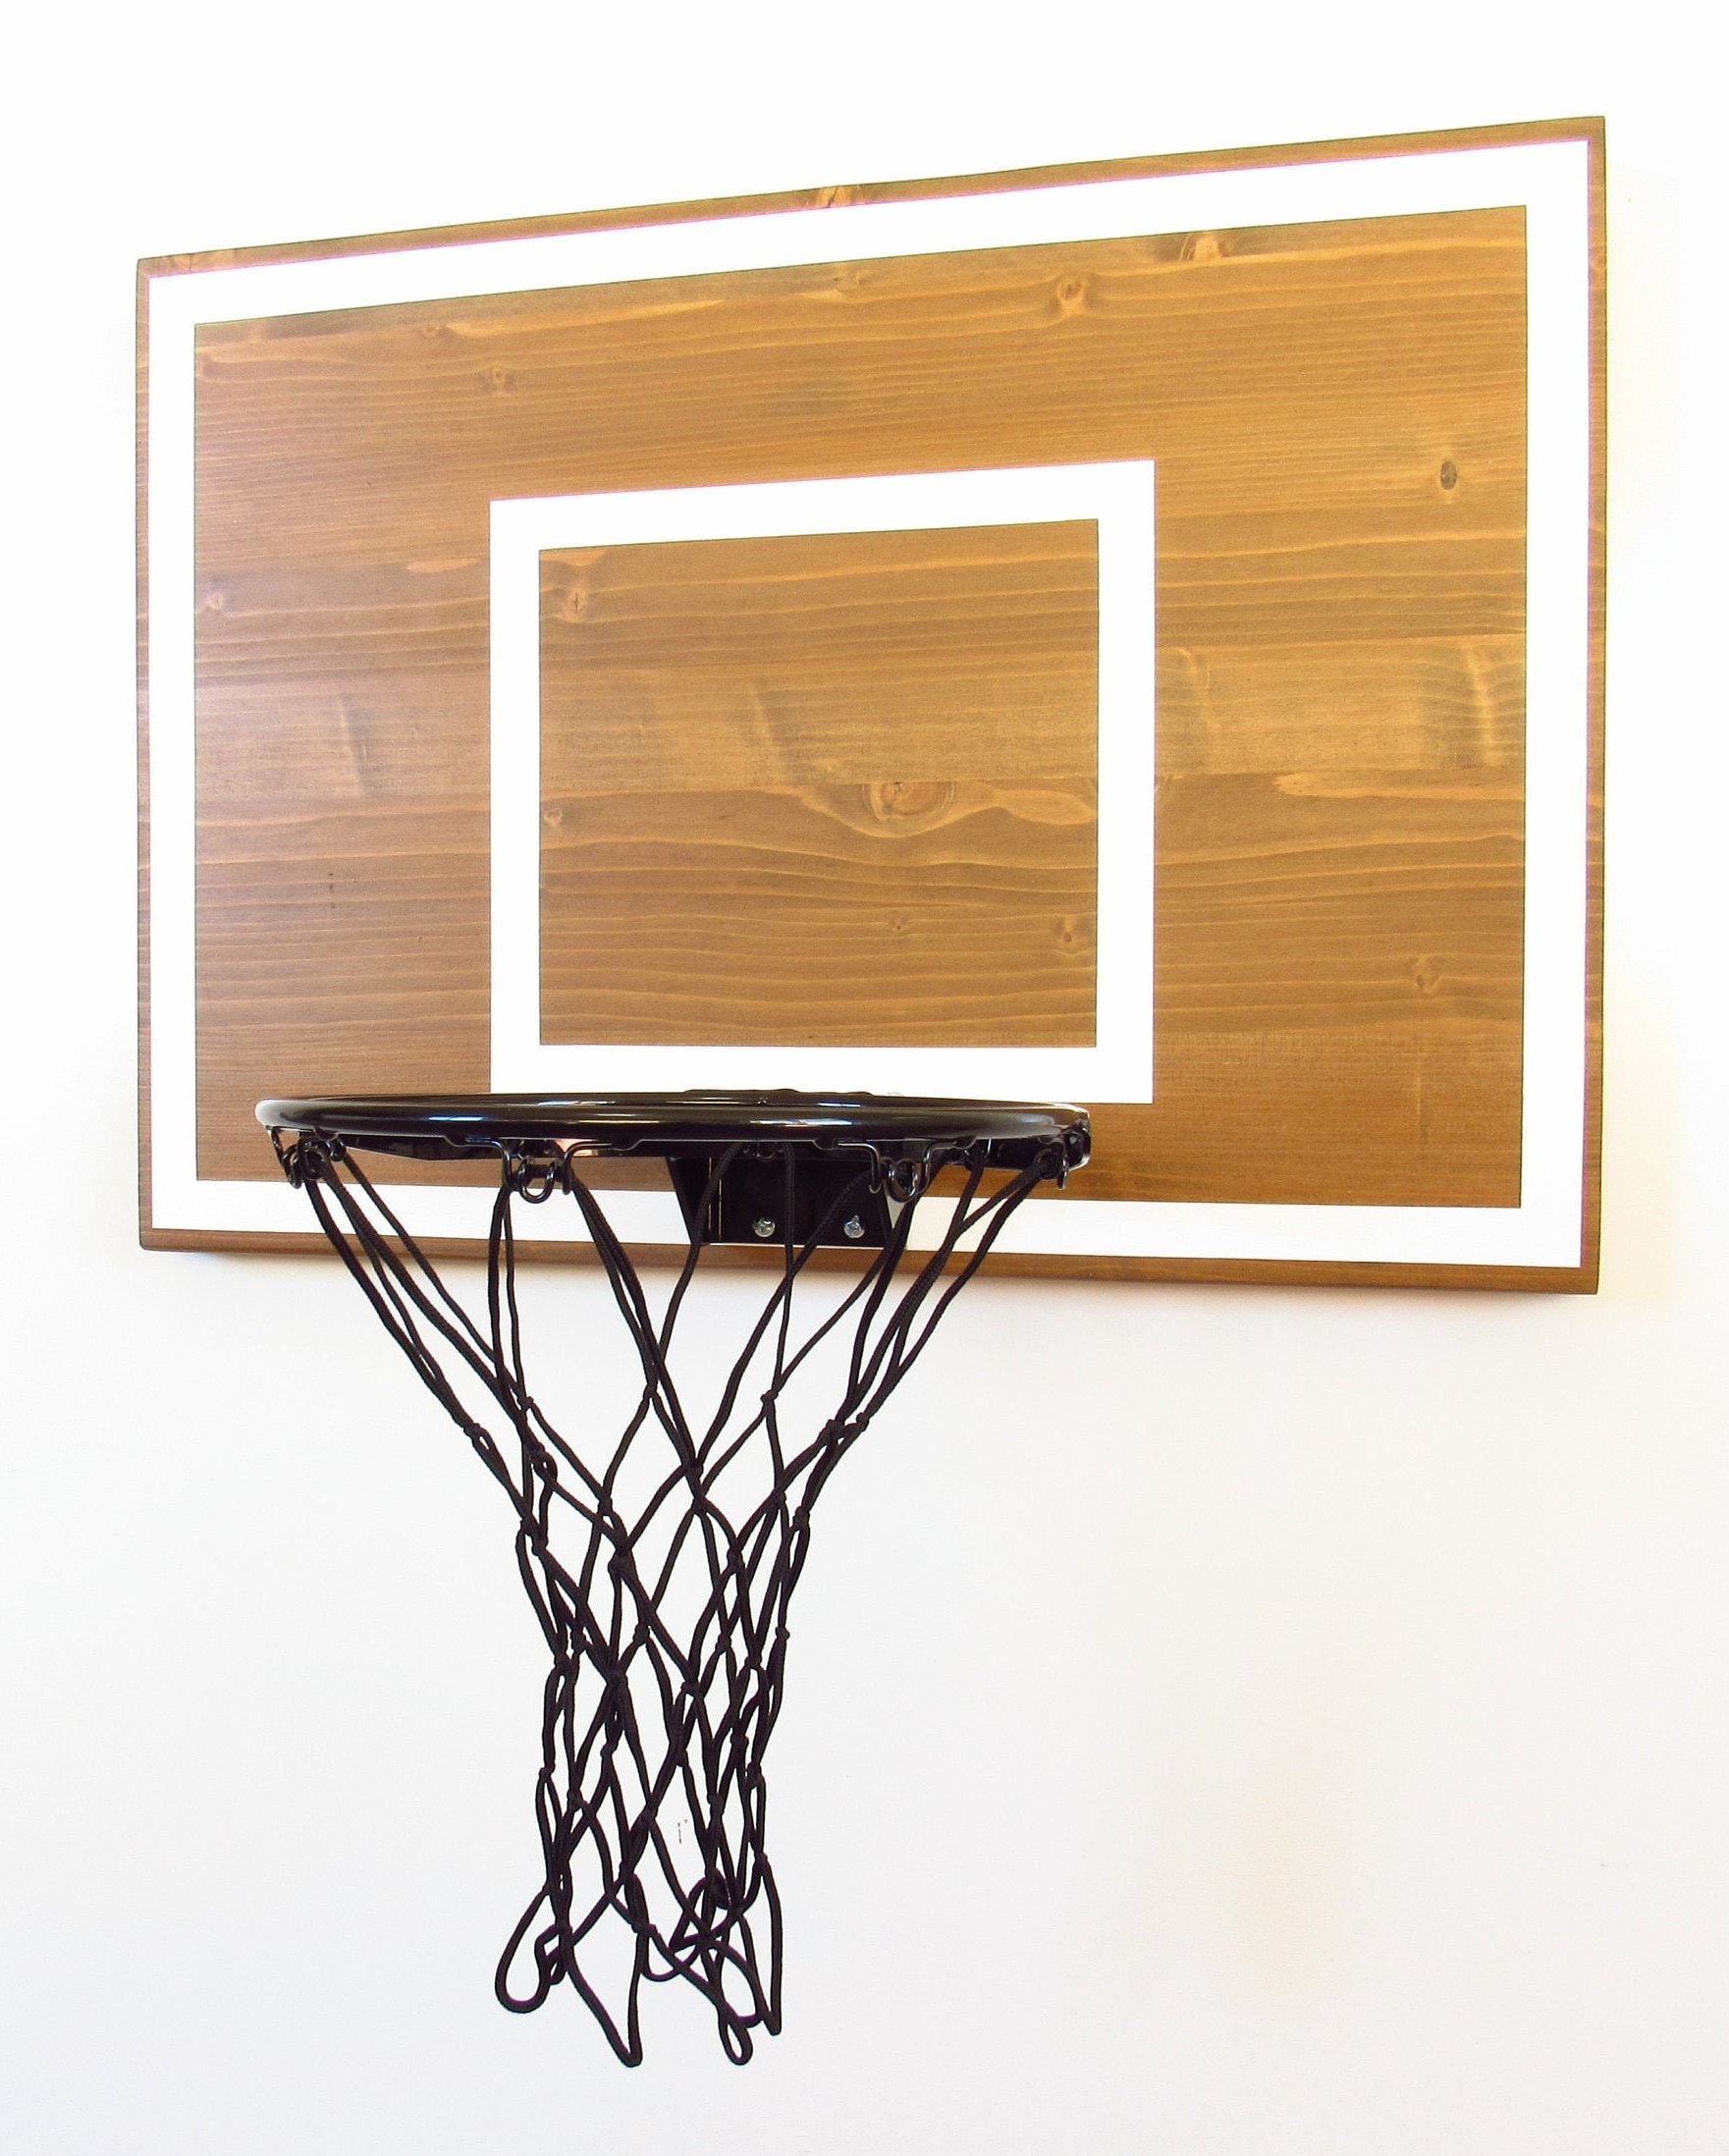 Descubrir 61+ imagen tablero de basquetbol madera